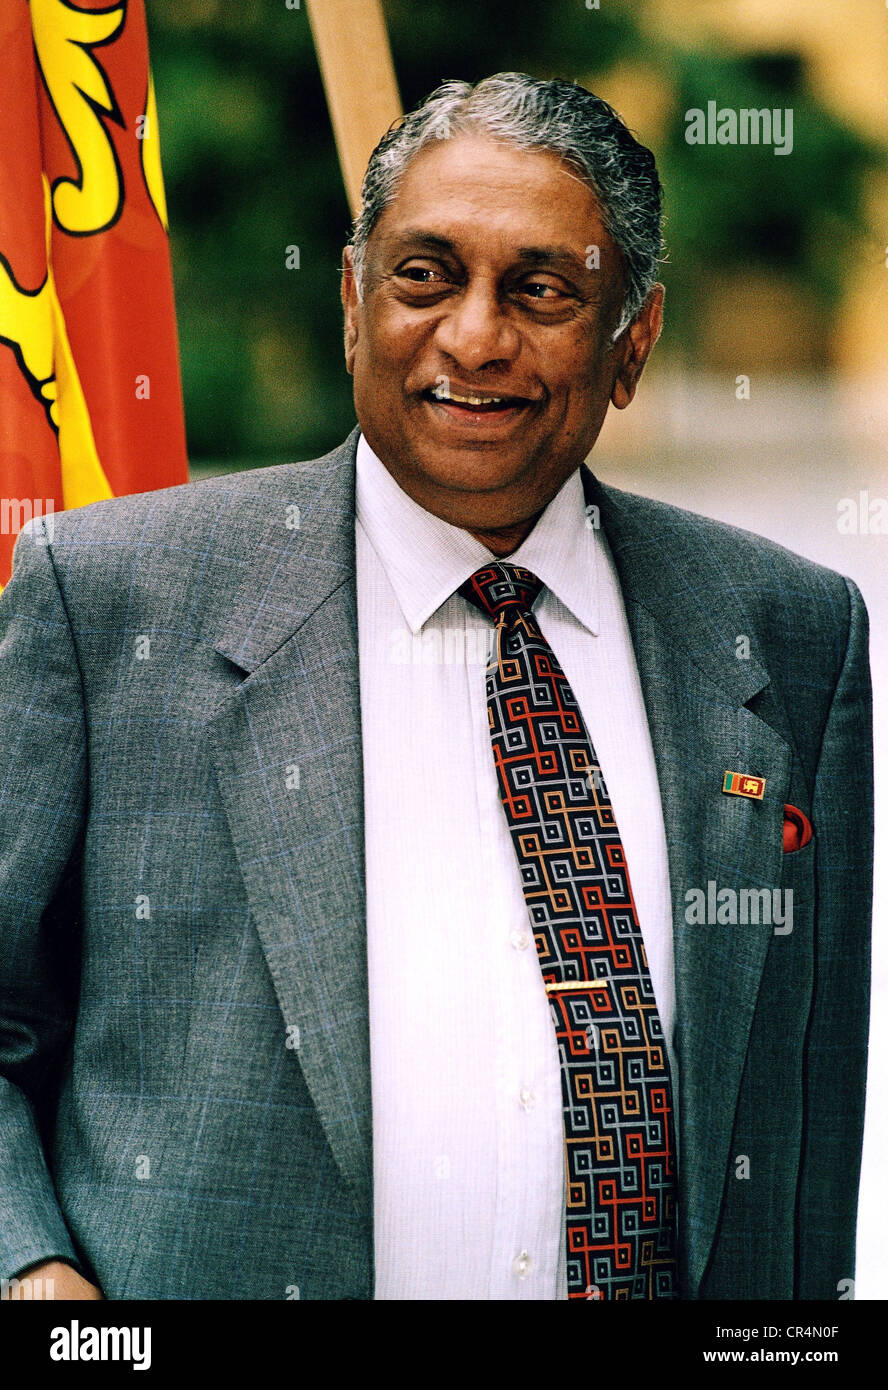 Kadirgamar, Lakshman, 12.4.1932 - 12.8.2005, diplomatico dello Sri Lanka, ministro degli Affari esteri dello Sri Lanka 1994 - 2001 e 2004 - 2005, mezza lunghezza, Berlino, 13.3. 2001, Foto Stock